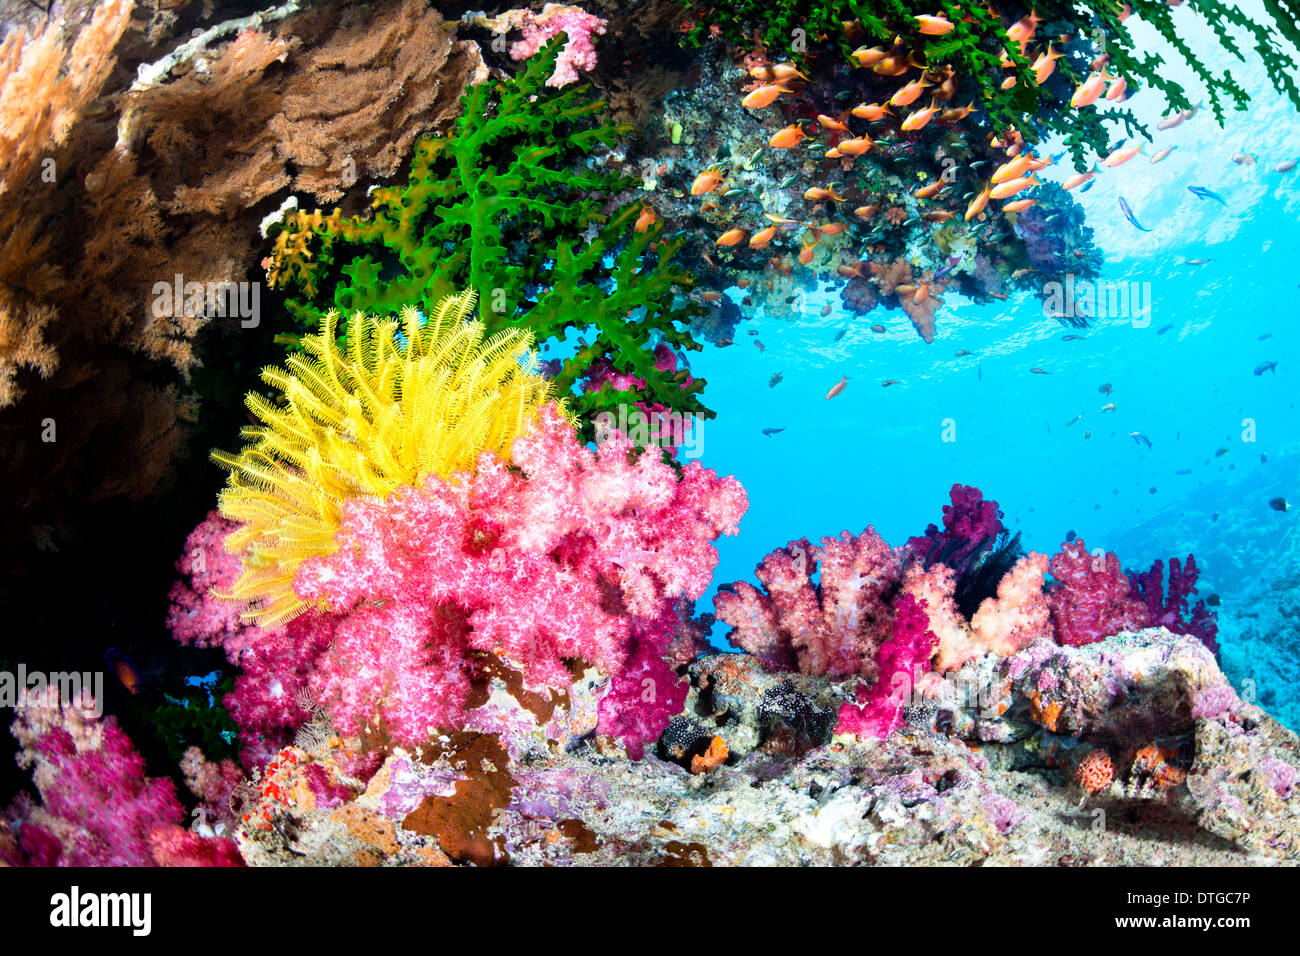 Un beau récif tropical exotique couverts avec des coraux mous et durs et un crinoïde jaune dans l'eau claire. Banque D'Images